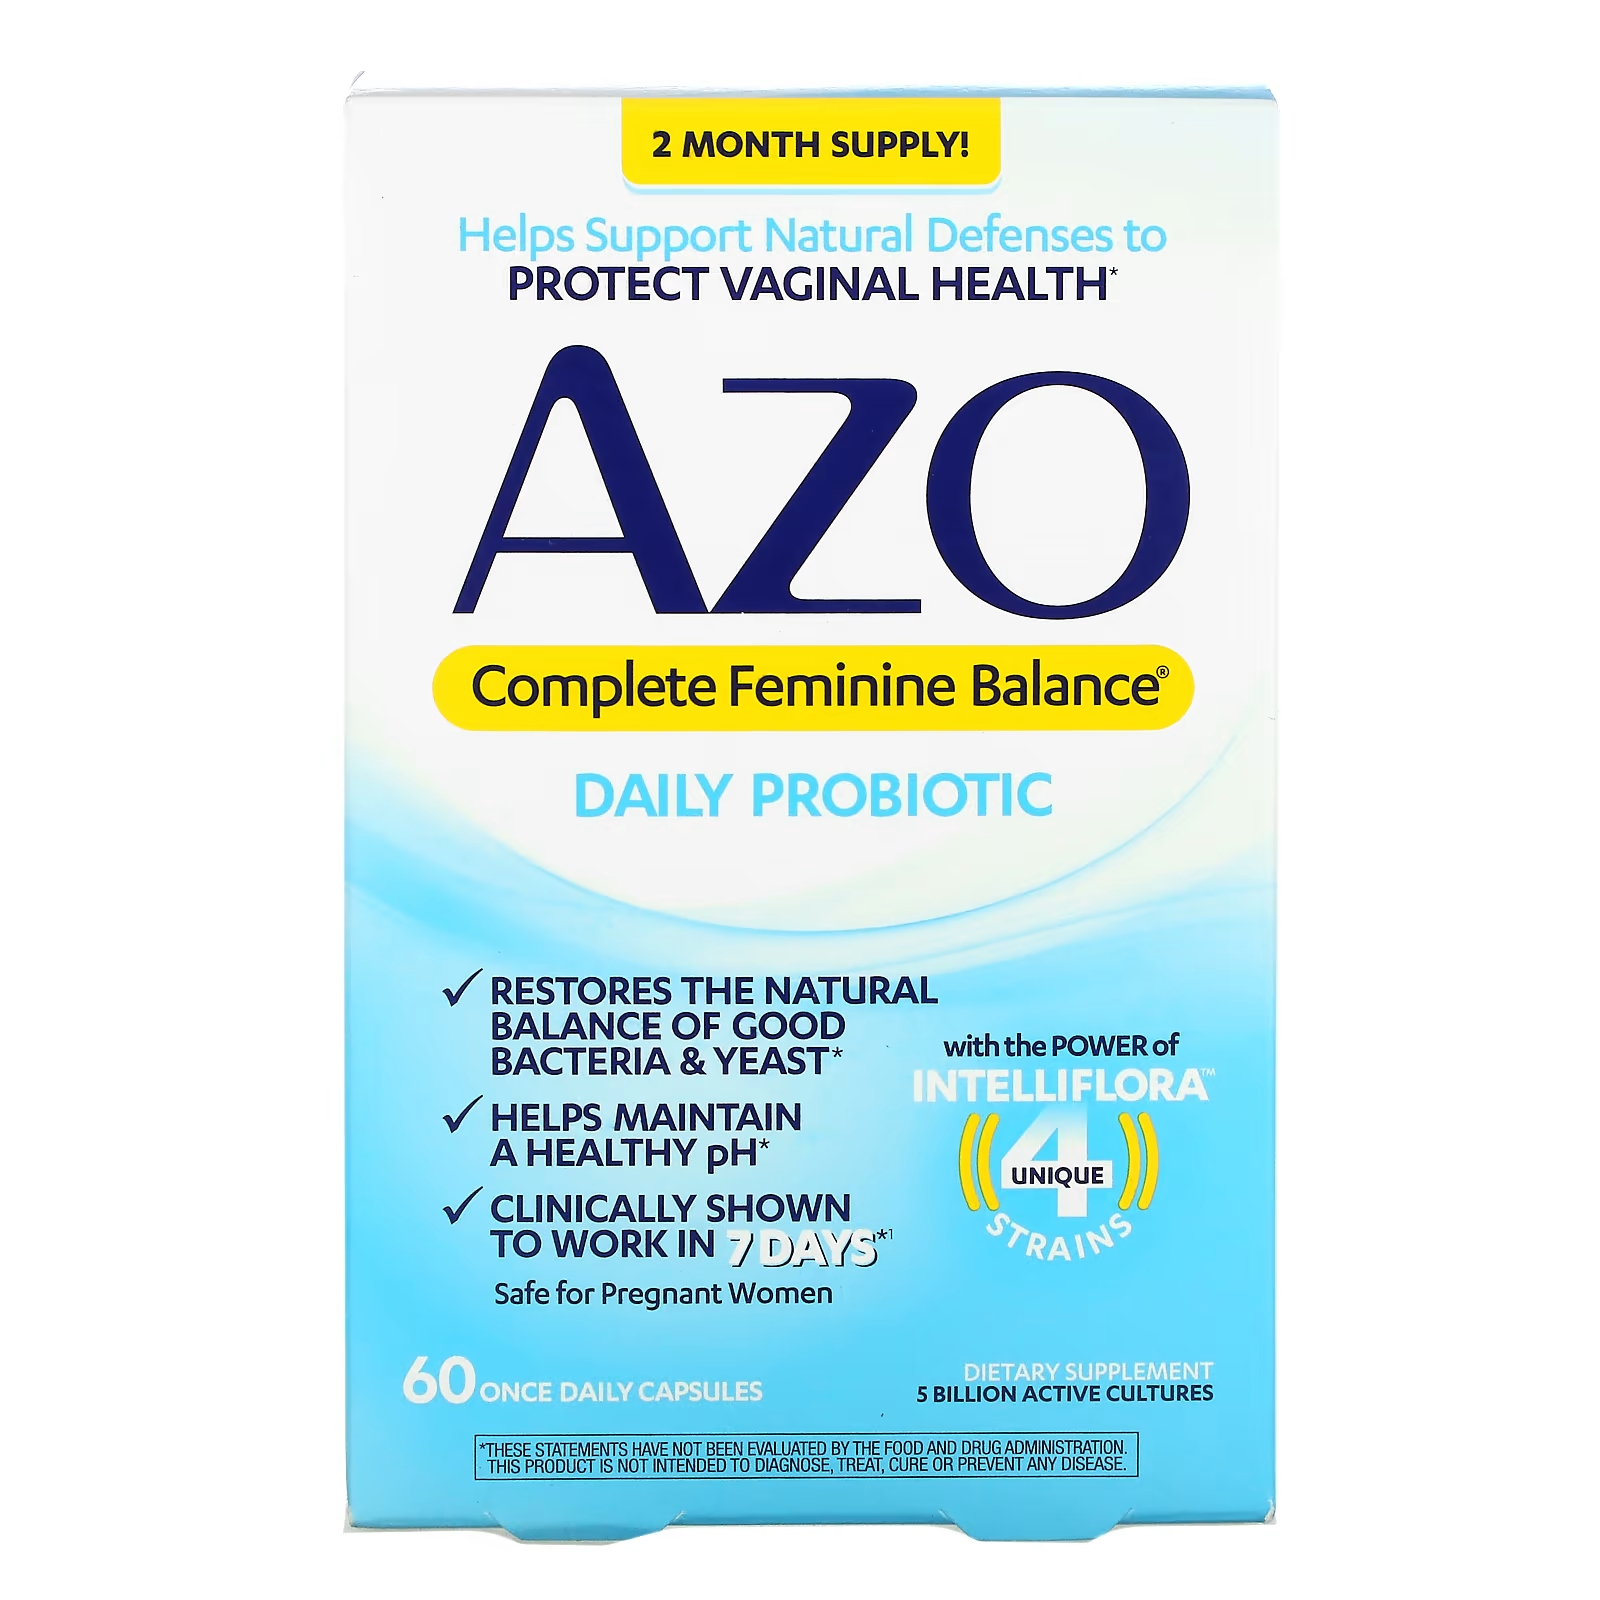 Azo Complete Feminine Balance Daily Probiotic 5 миллиардов 60 капсул один раз в день azo complete feminine balance пробиотик для ежедневного приема 5 млрд активных культур 60 капсул для приема один раз в день